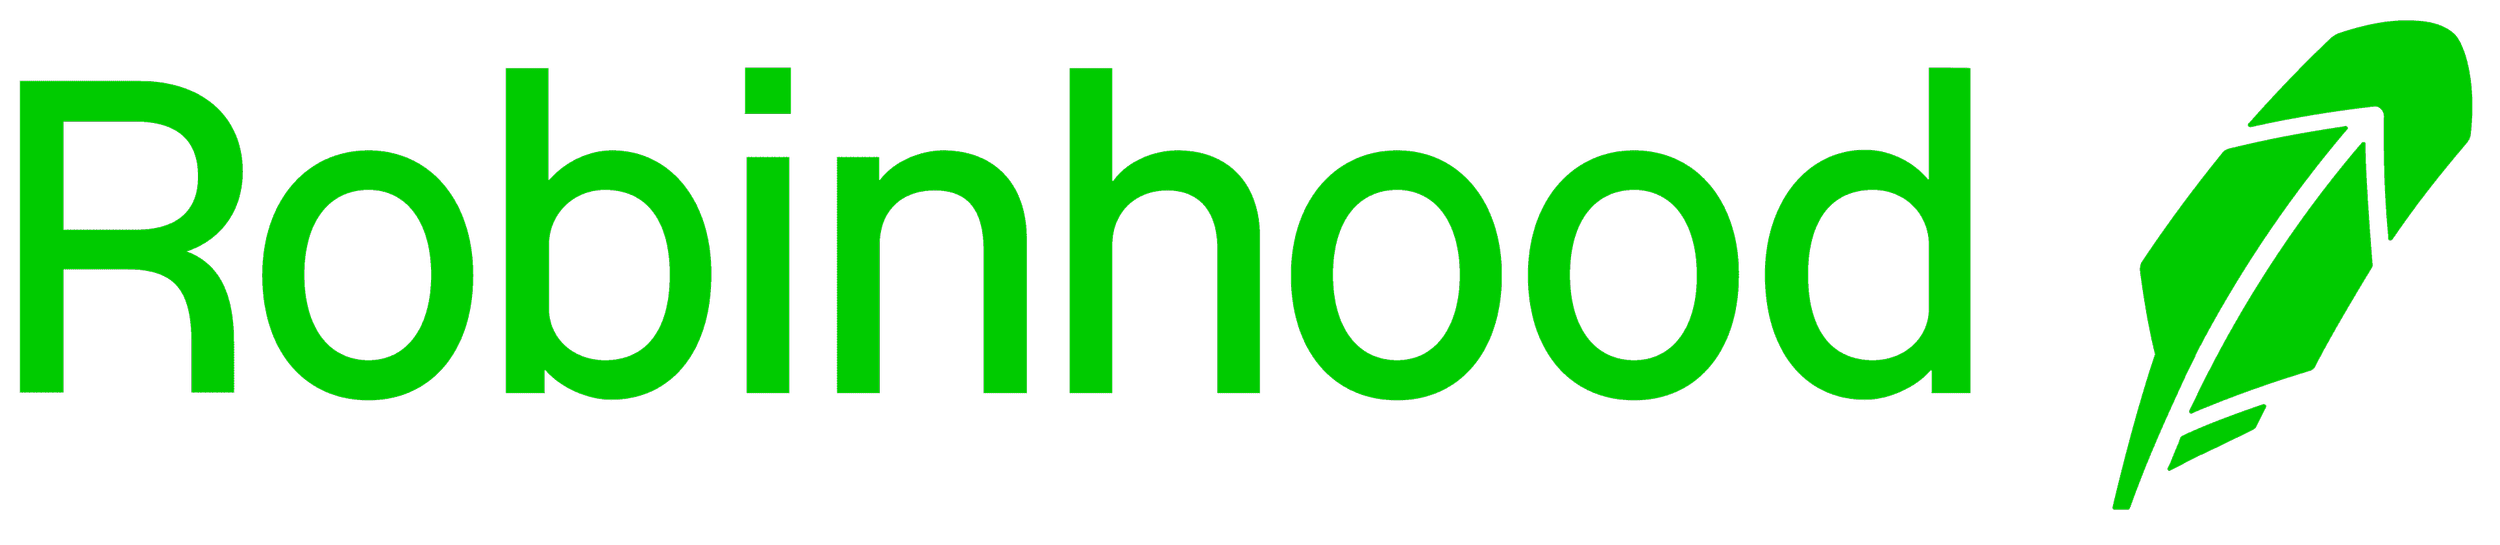 robinhood-logo.png